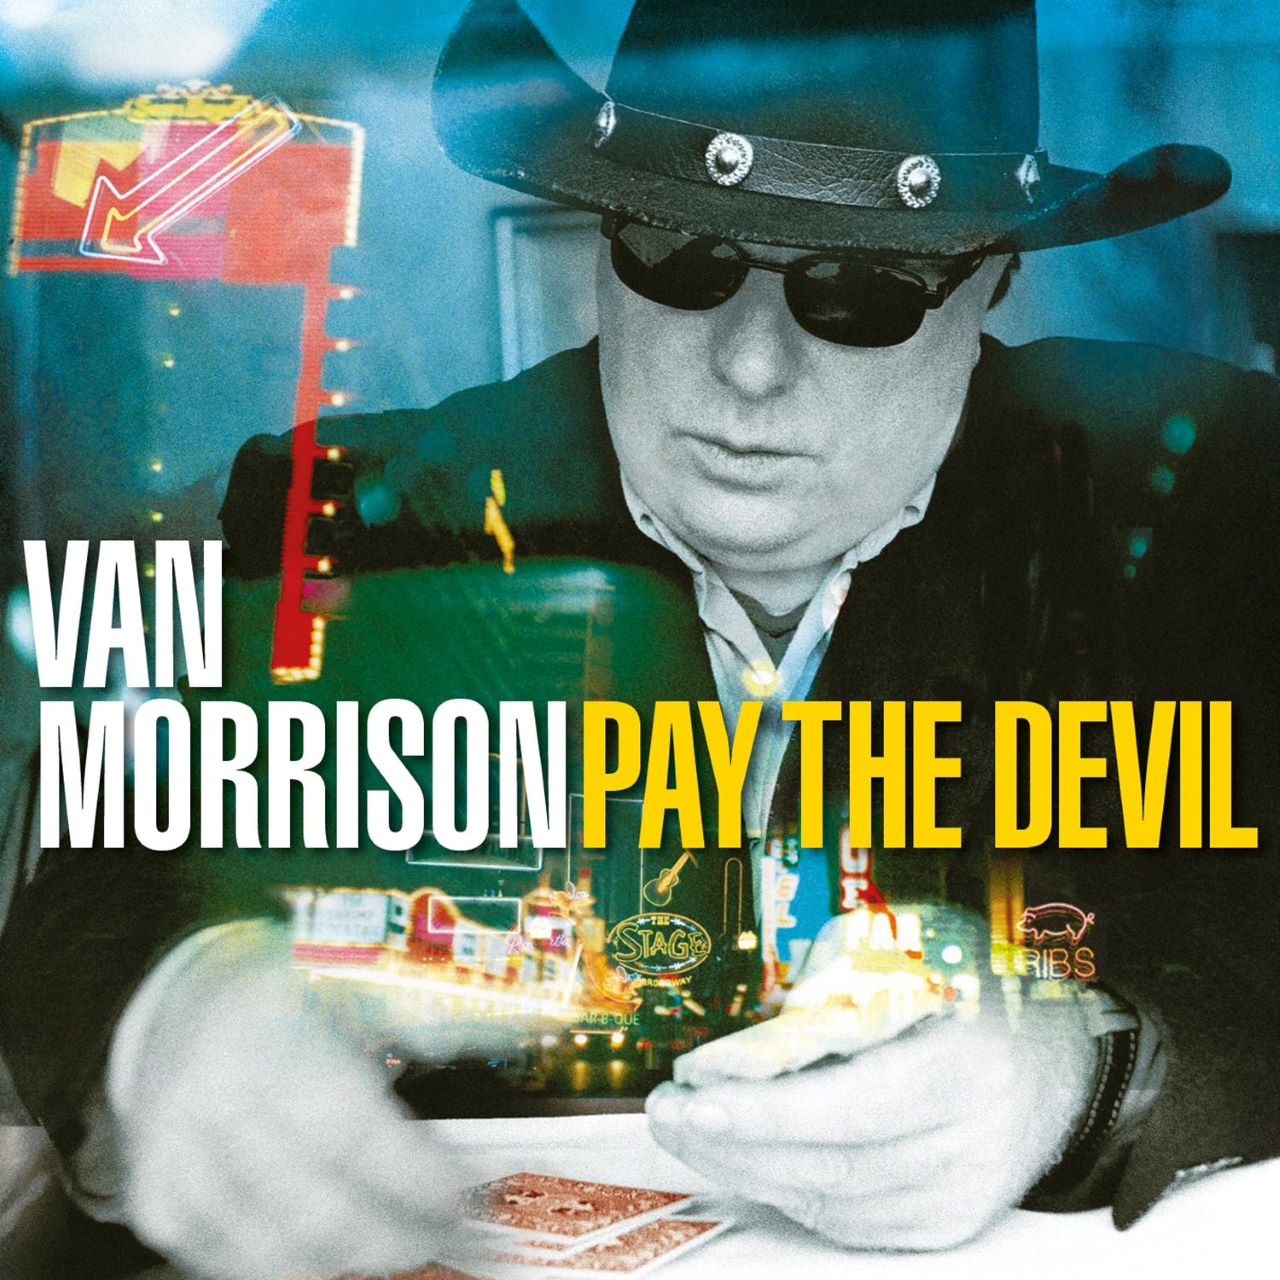 Van Morrison - Pay The Devil cover album